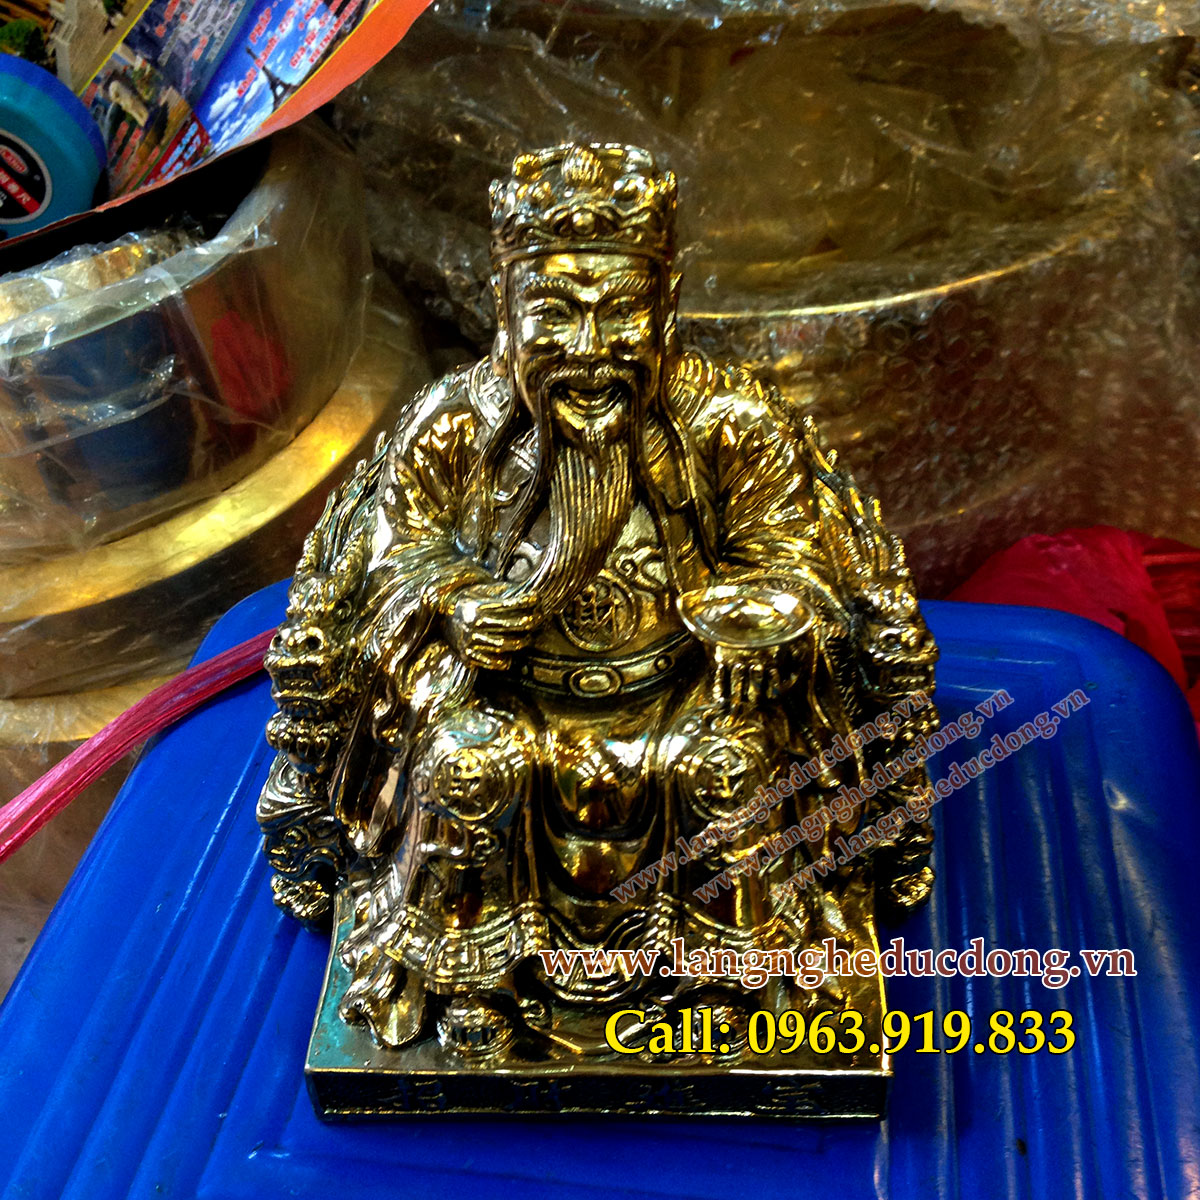 langngheducdong.vn - tượng đồng văn thù phổ hiền mẫu cao 40cm, tượng đồng